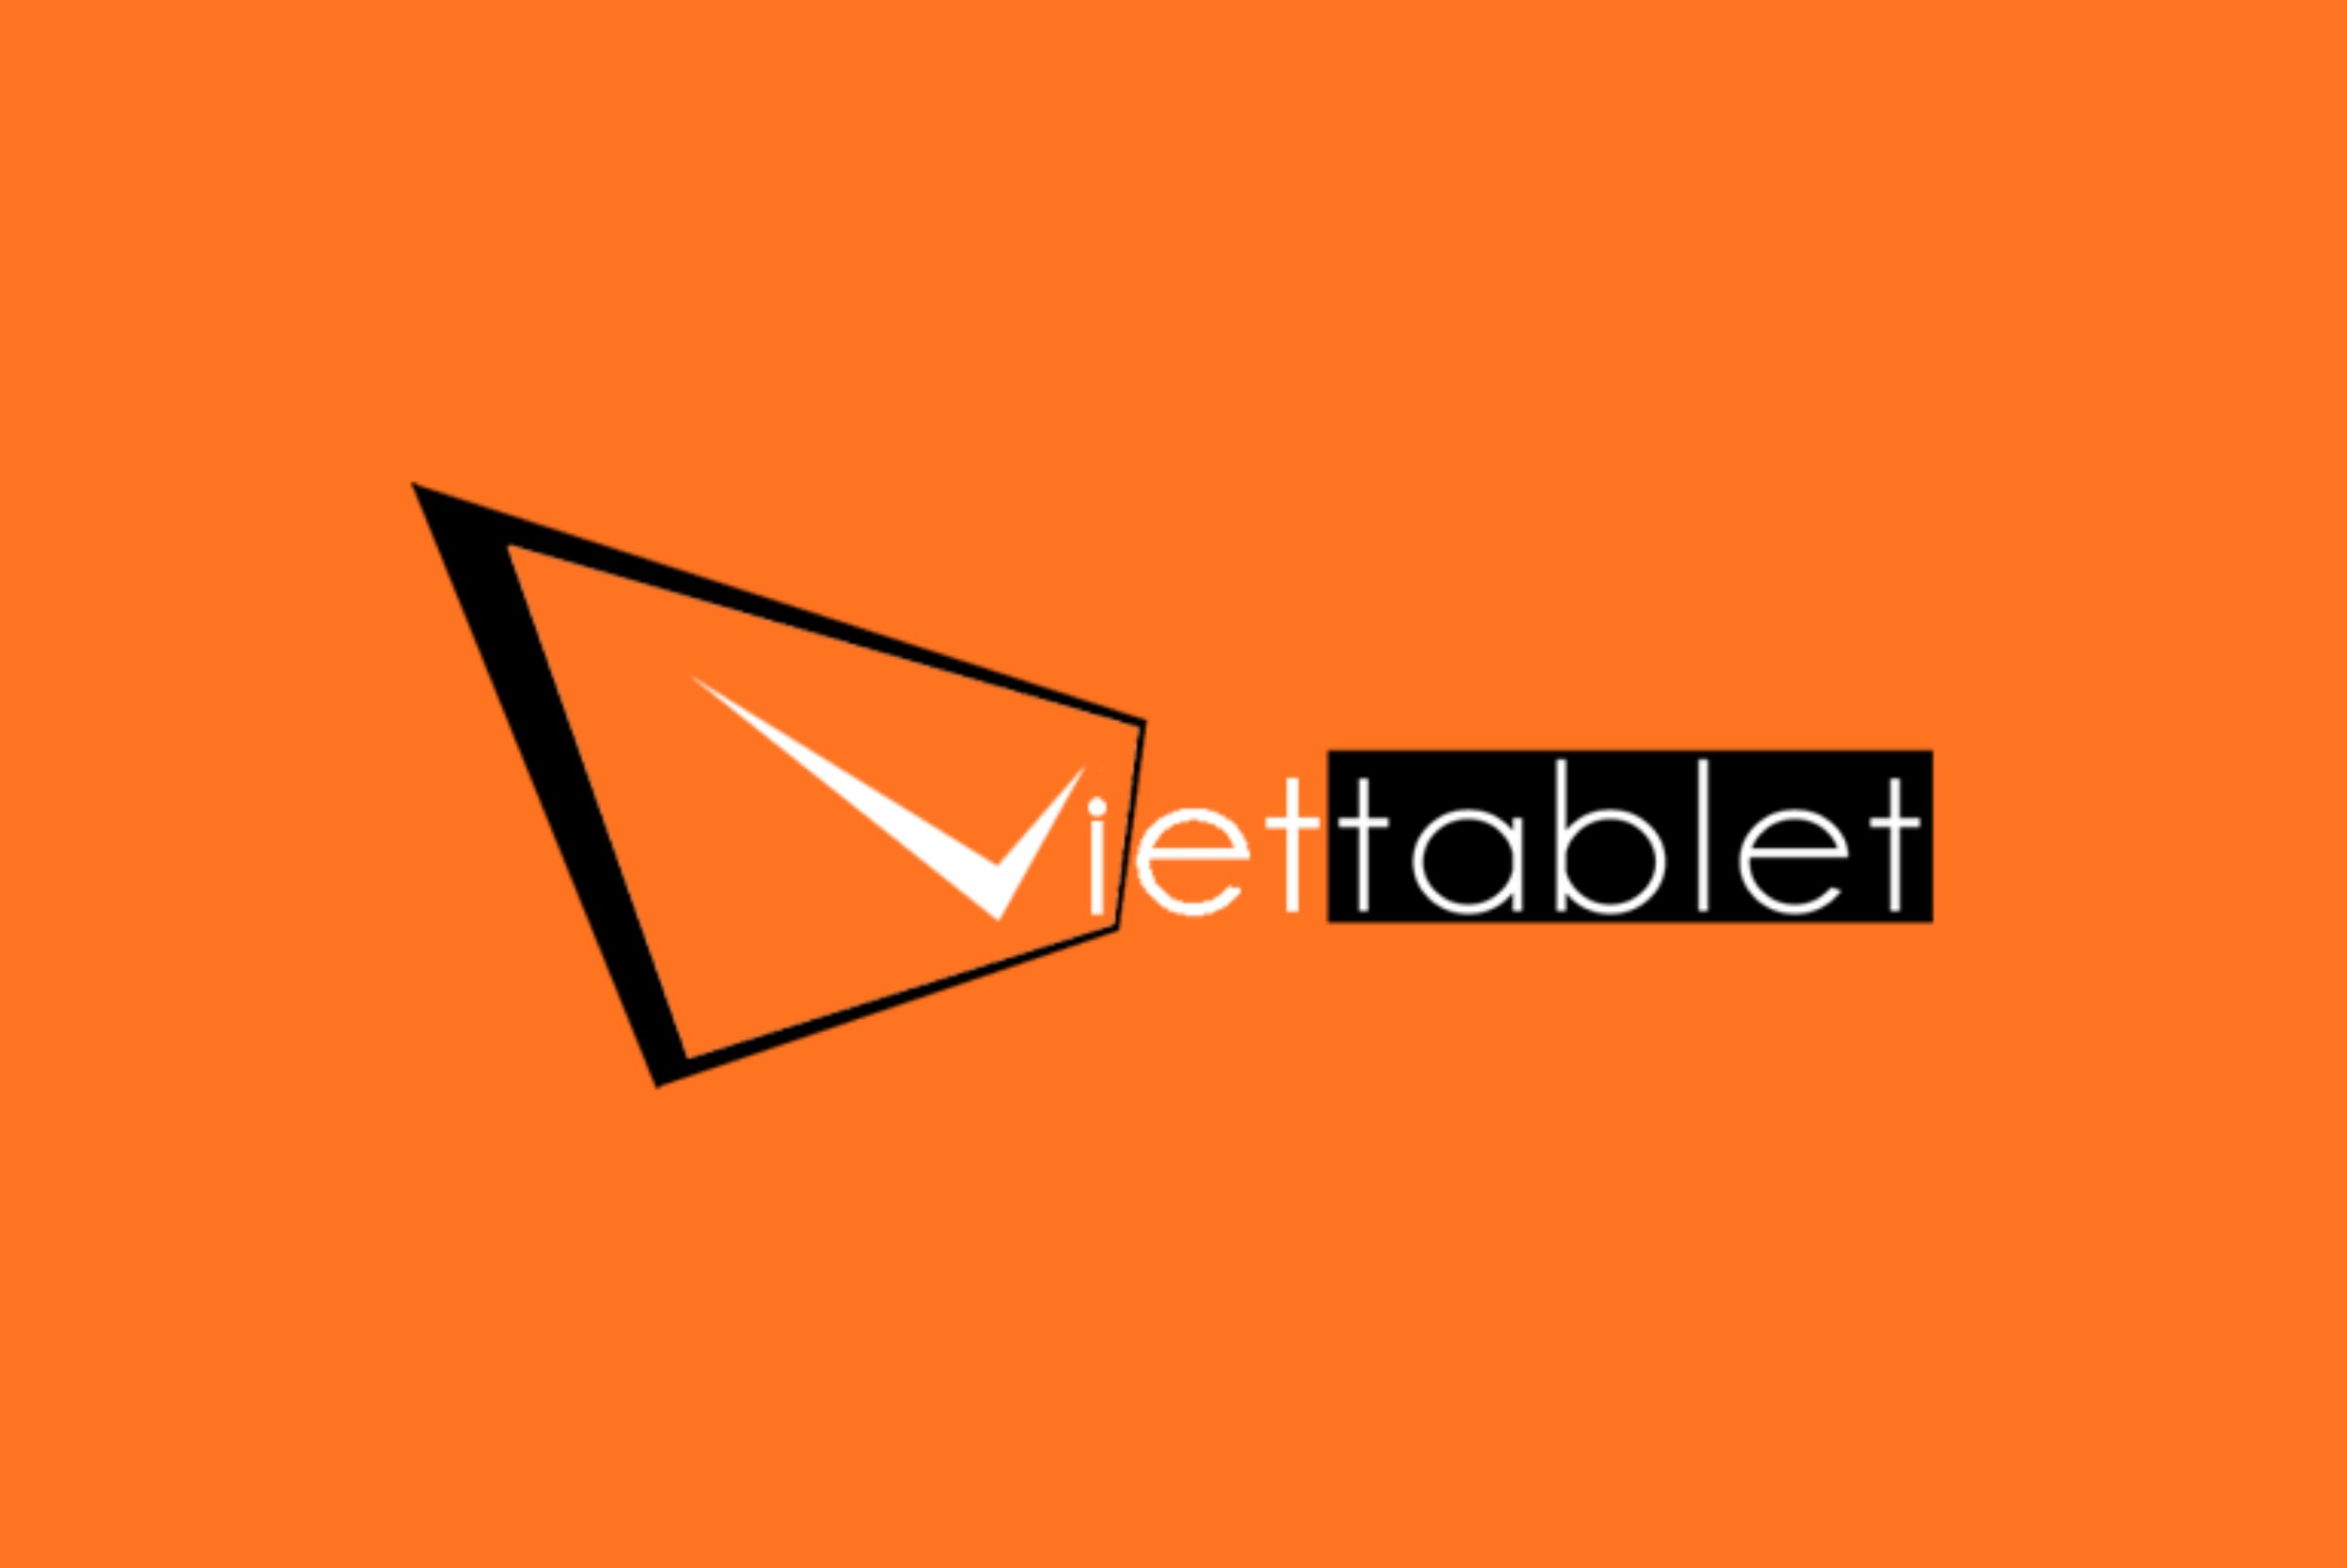 viettablet-logo